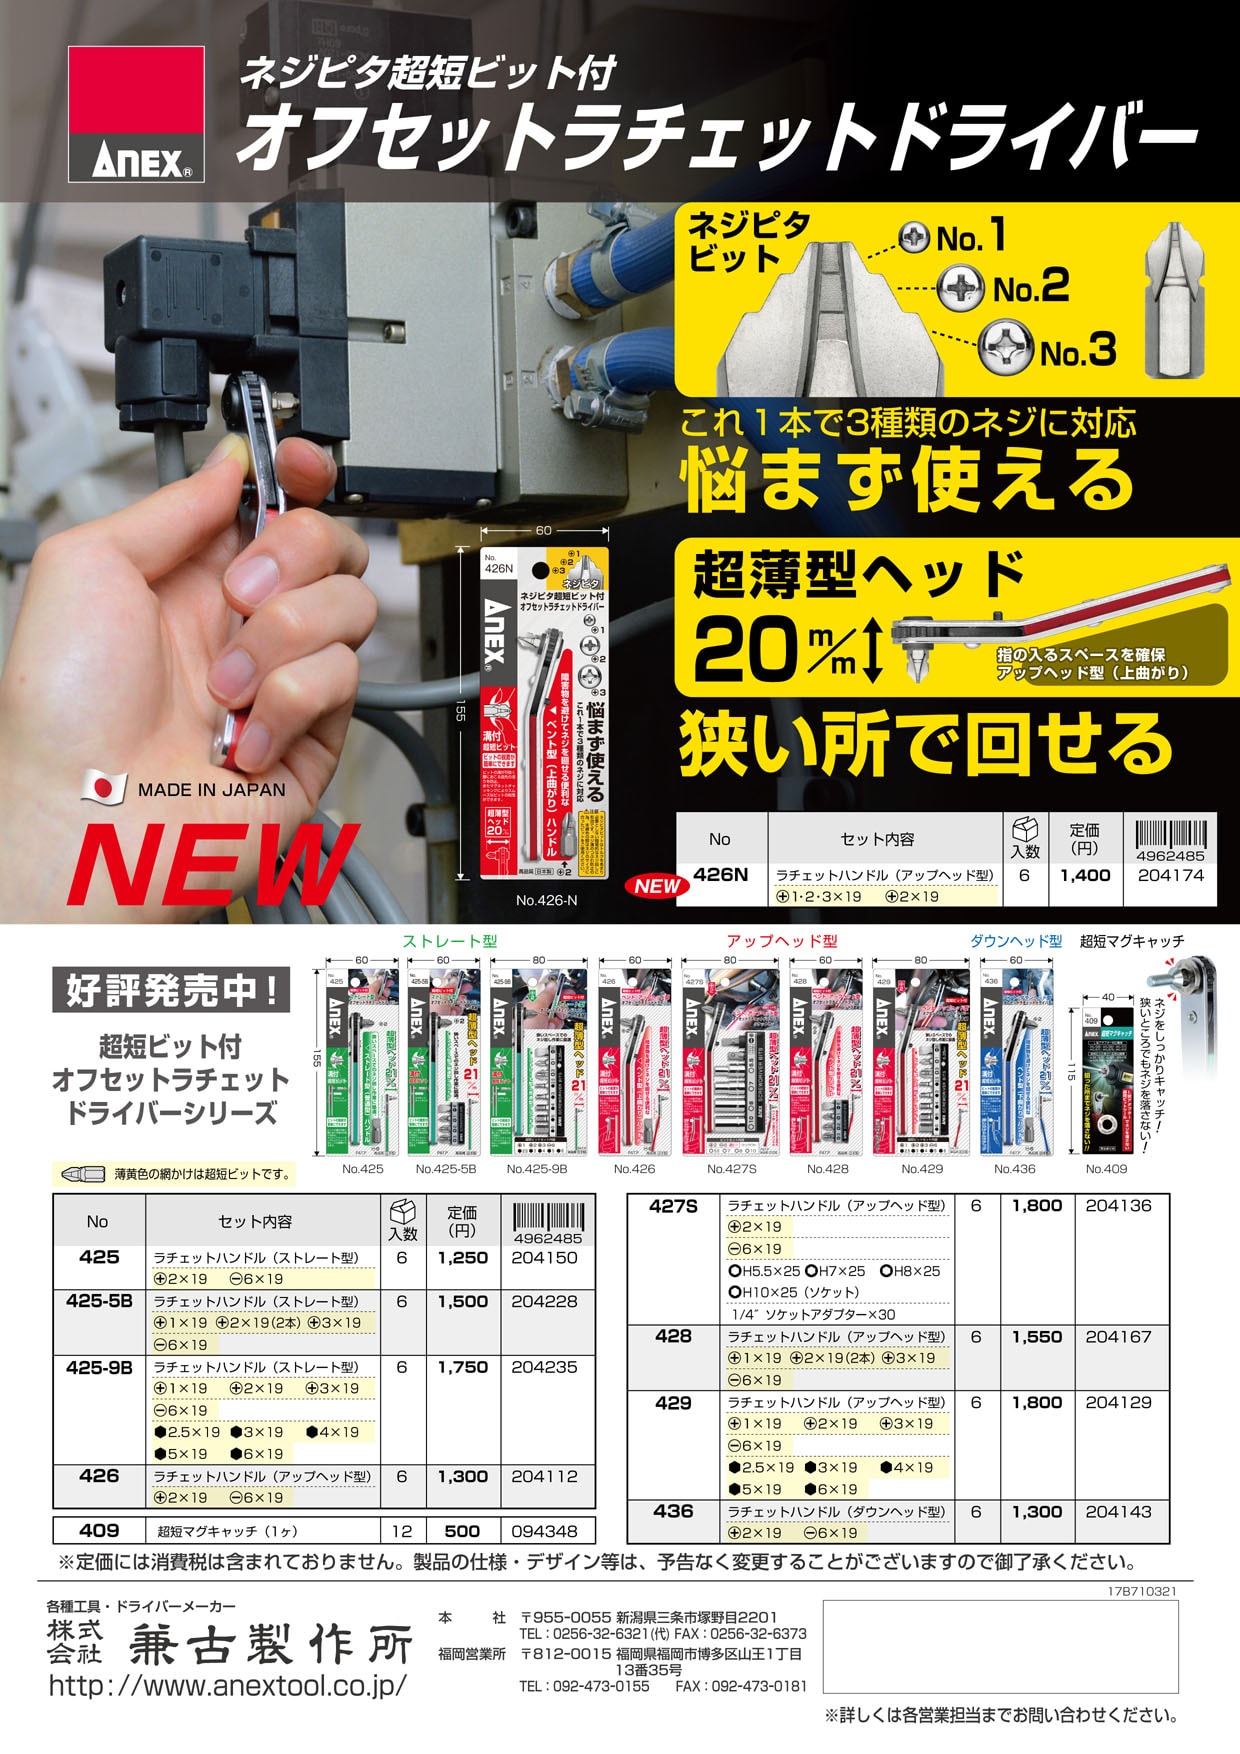 日本正規代理店品 ANＥX アネックス ベントアップヘッド型オフセットラチェットドライバ- ビット9